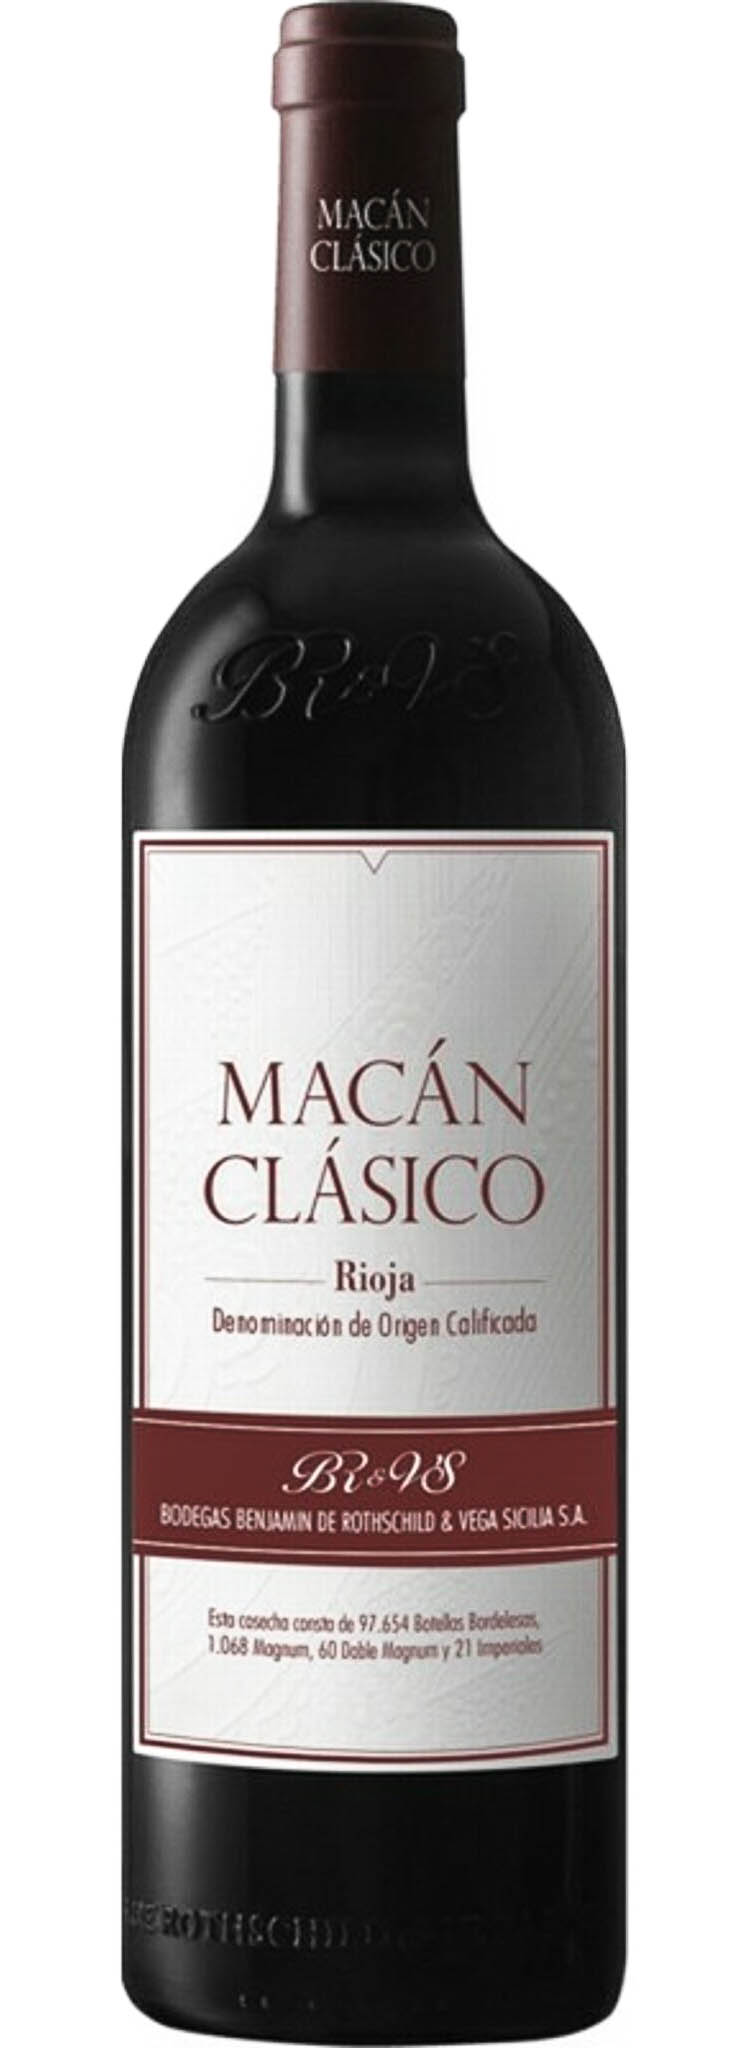 2019 Macan Clasico, Vega Sicilia/Rothschild